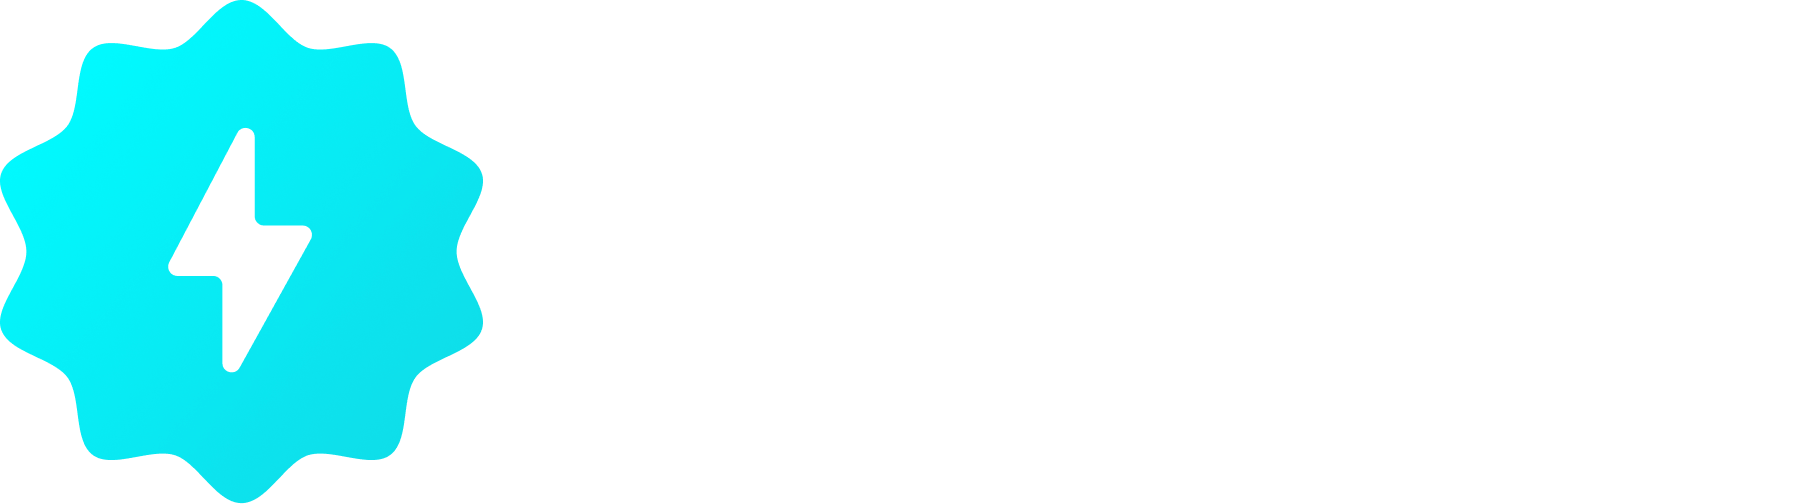 Fueler Beta logo